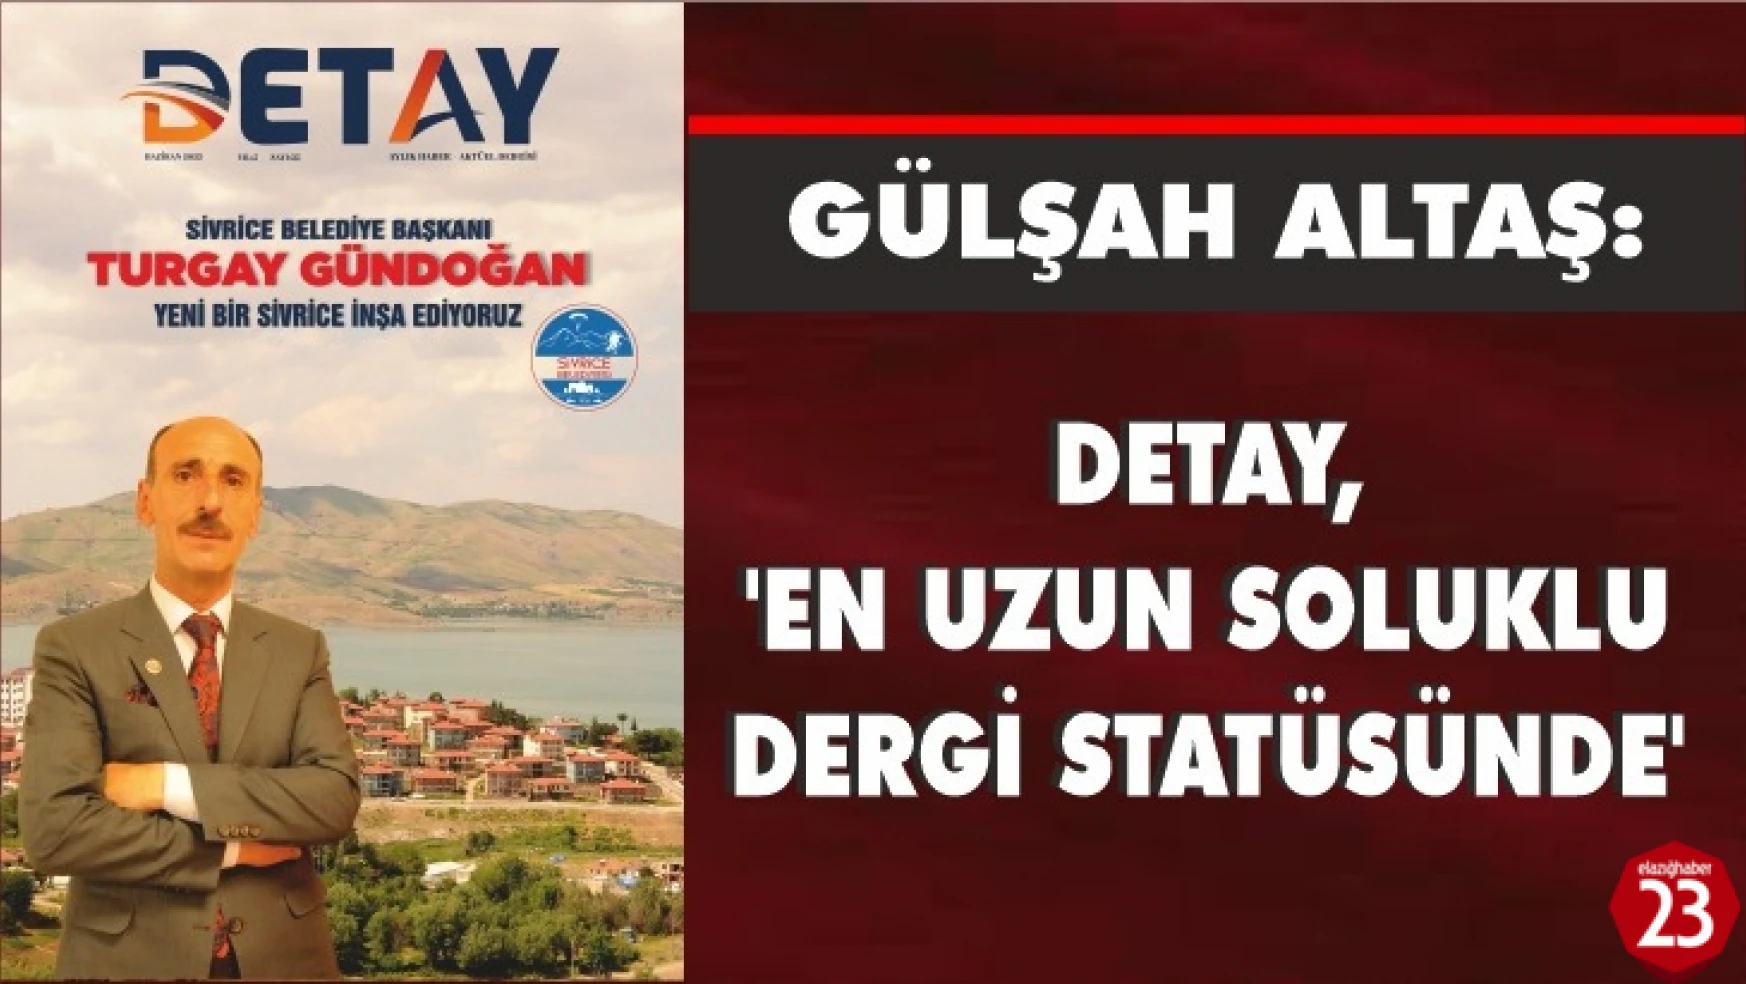 Gülşah Altaş, Detay En Uzun Soluklu Dergi Statüsünde